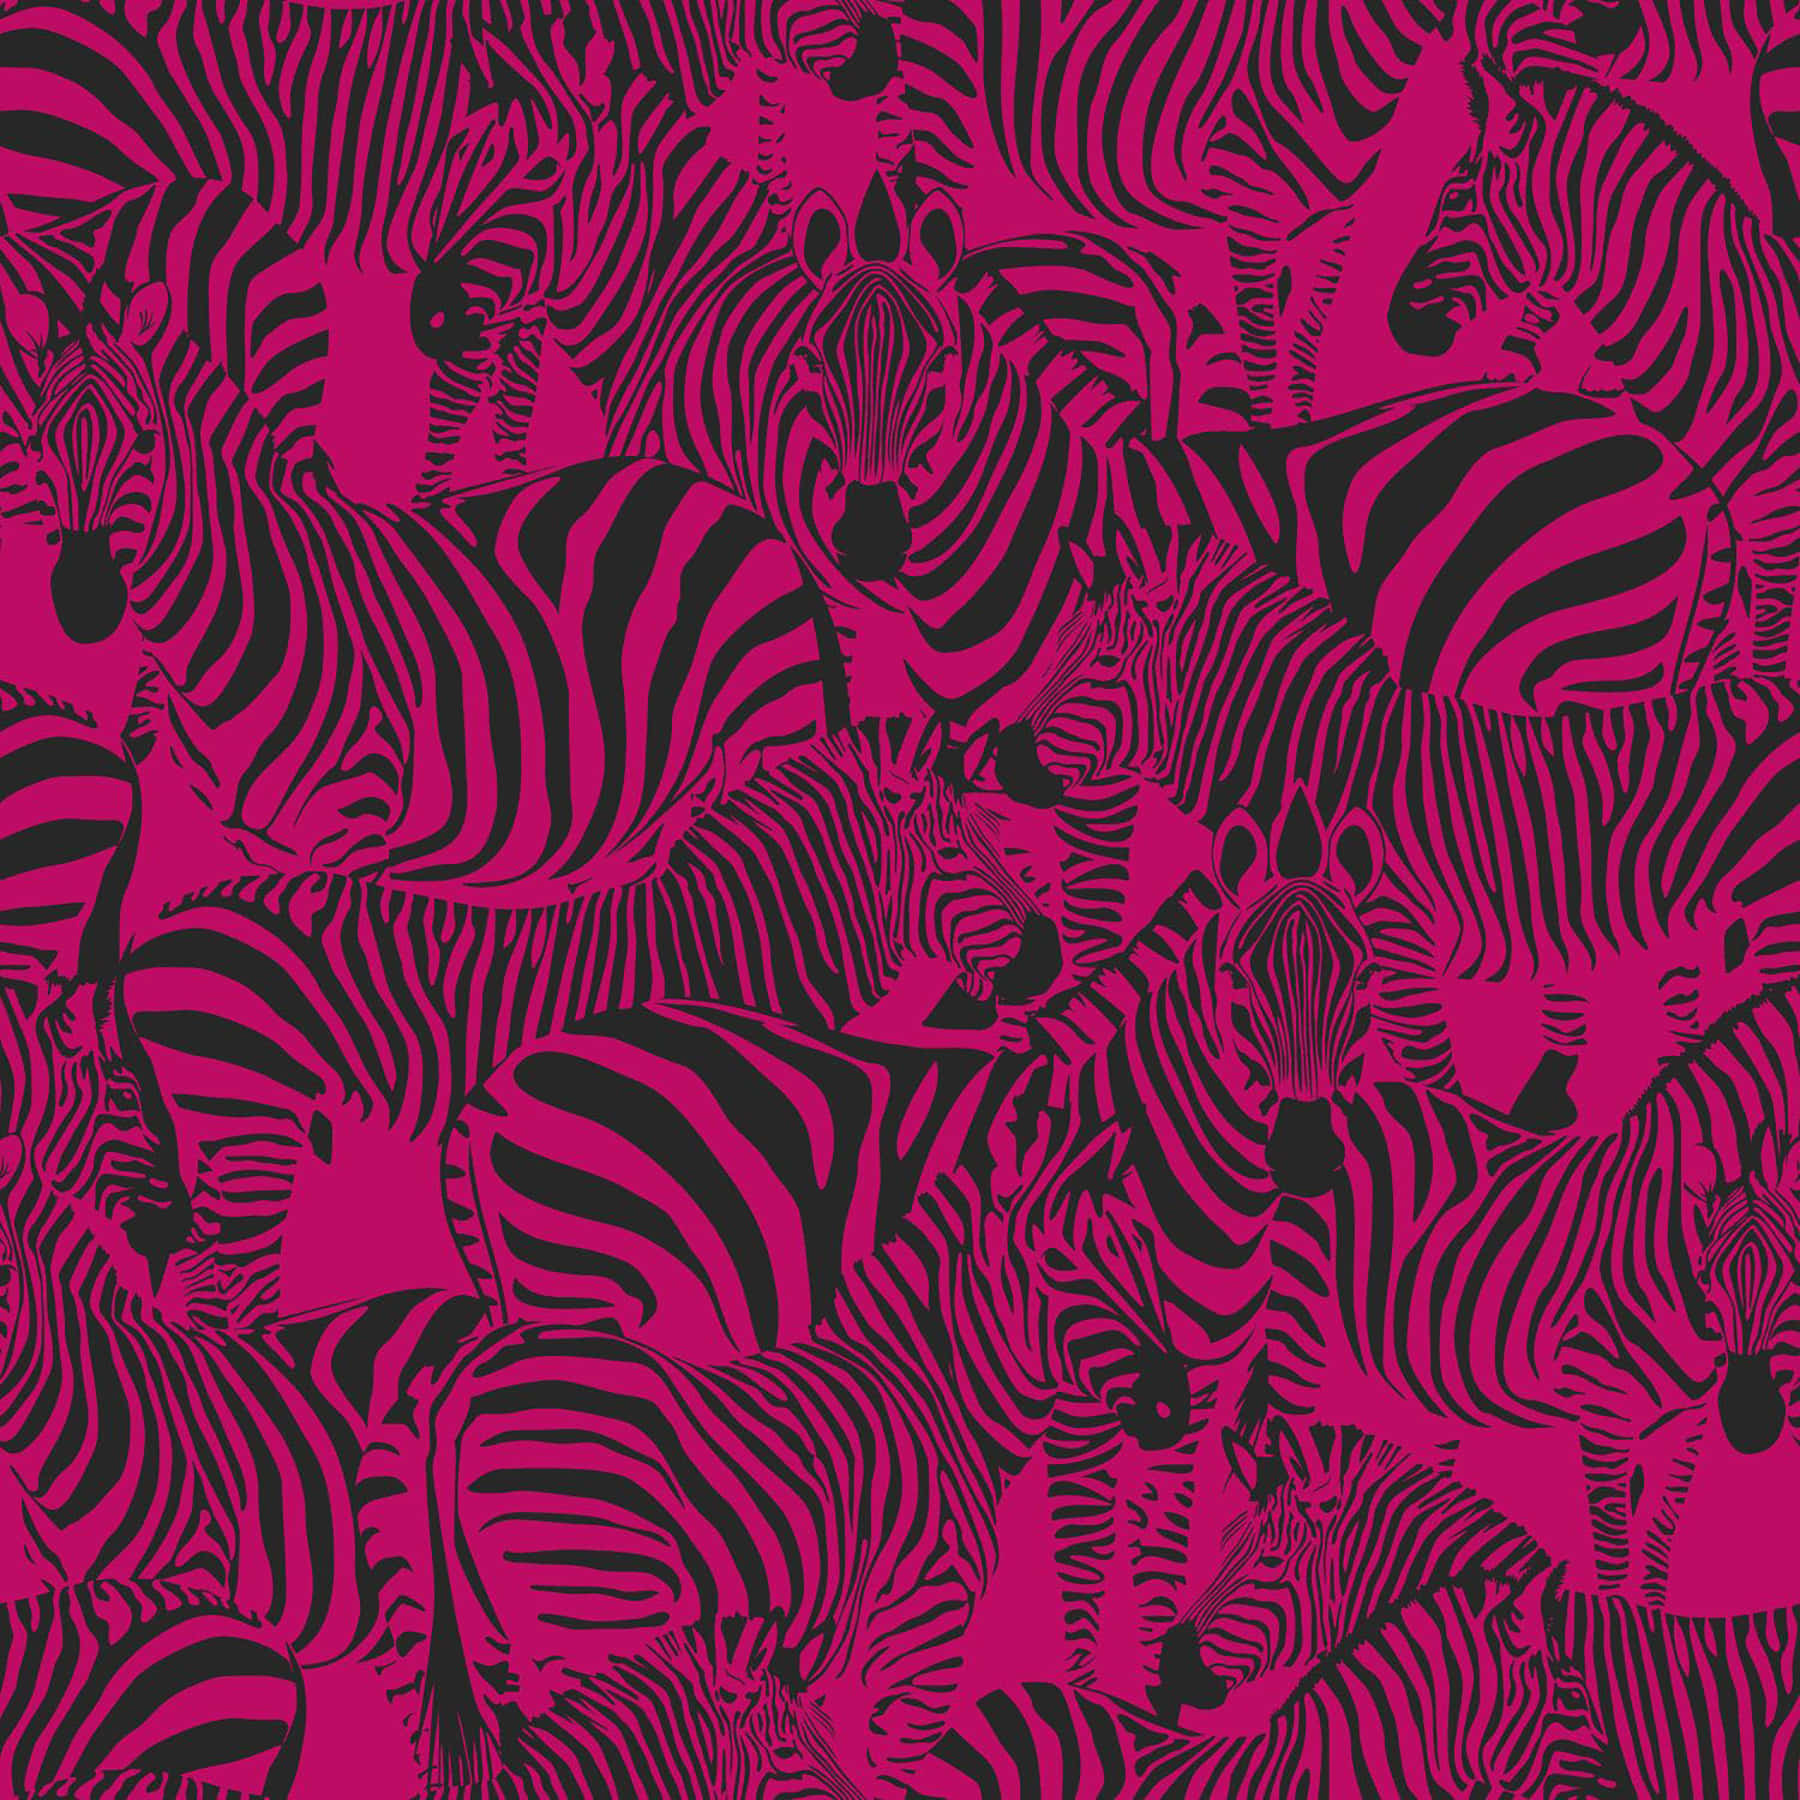 Patrónde Figura De Animal De Cebra Rosa Y Negra Fondo de pantalla